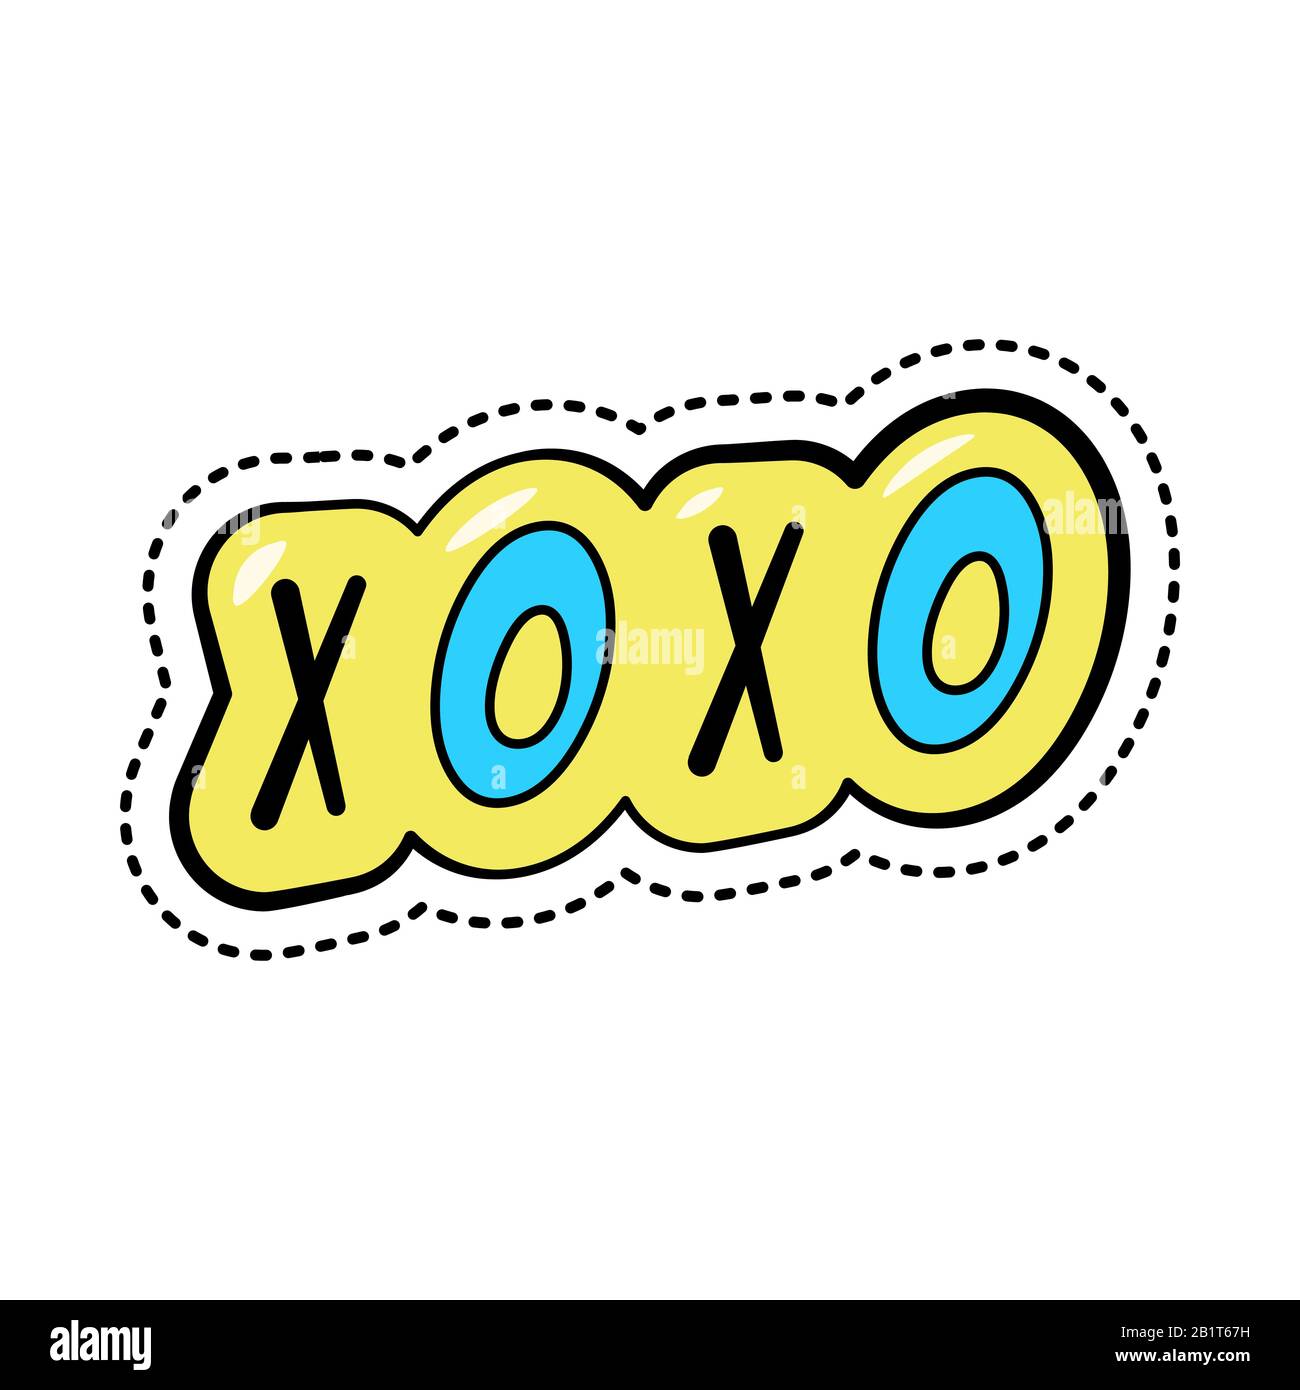 Adesivo colorato cartone animato con testo xoxo, elegante patch badge con abbreviazione slang, illustrazione vettoriale. Illustrazione Vettoriale